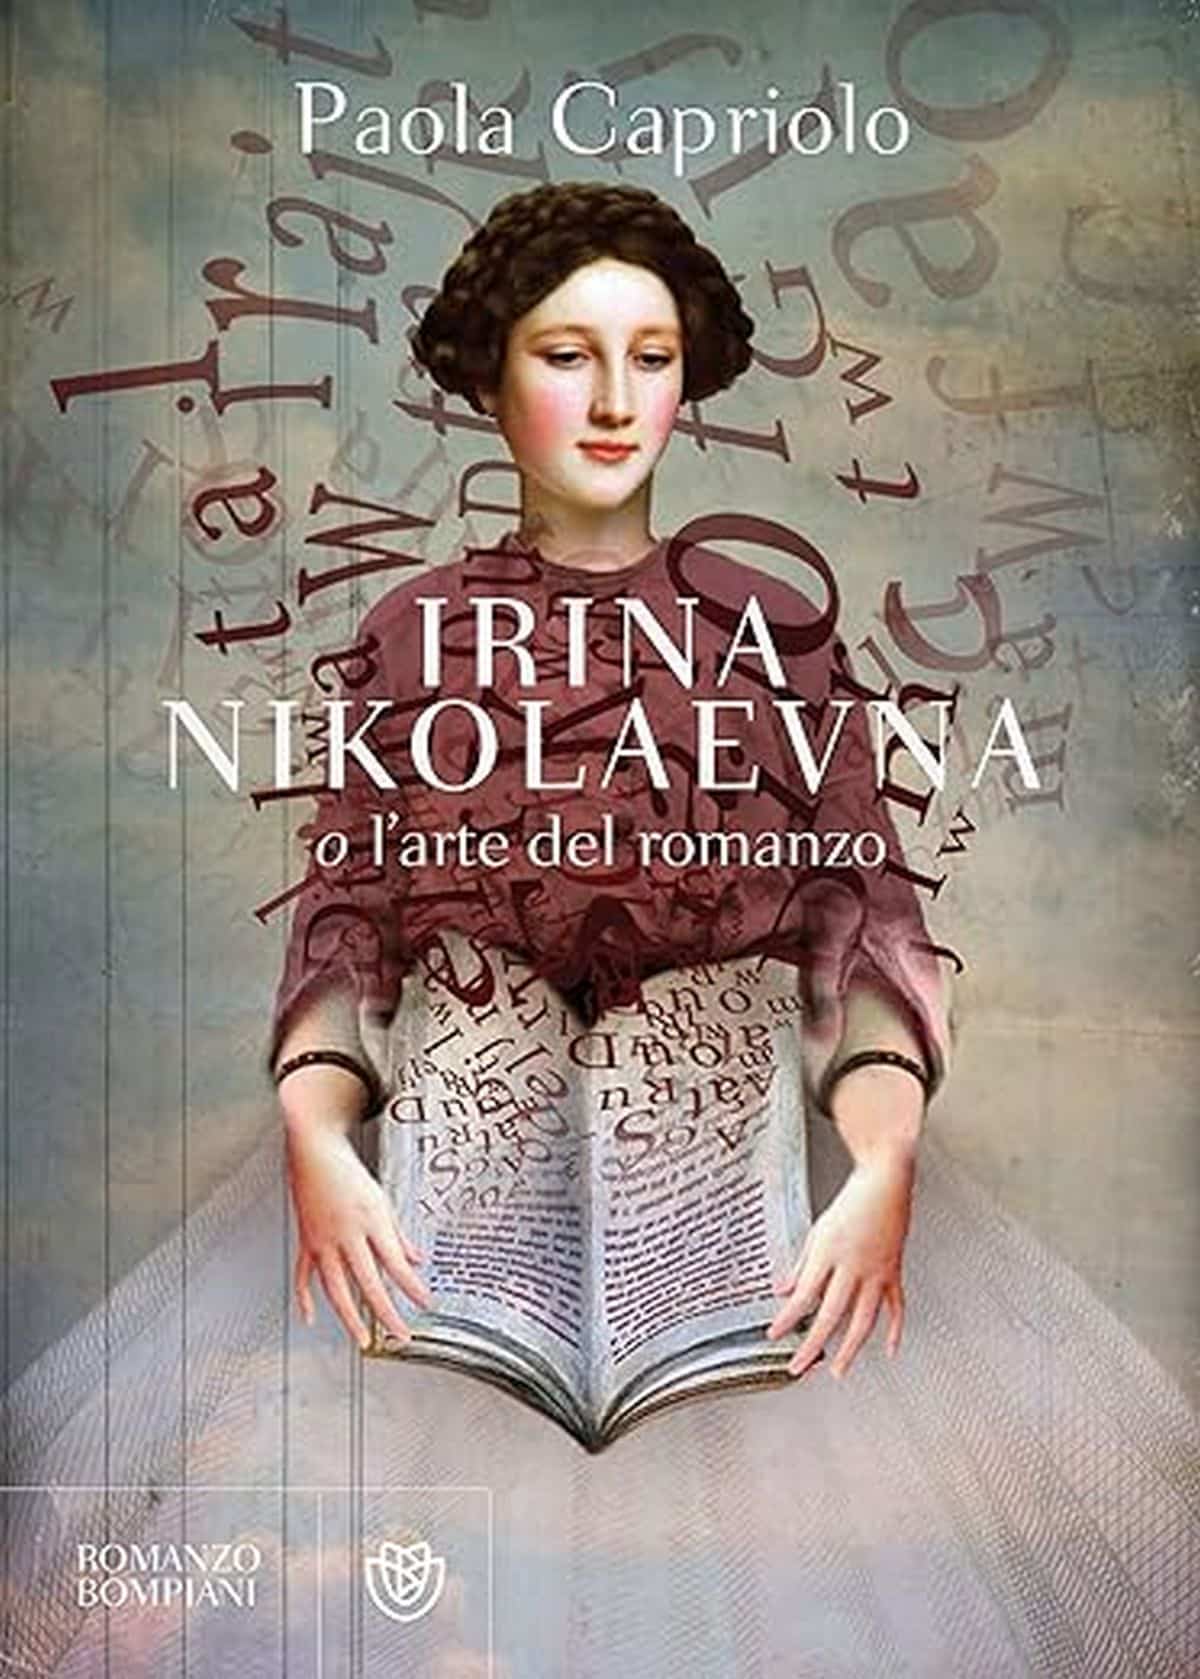 Paola Capriolo irina nikolaevna o l'arte del romanzo bompiani